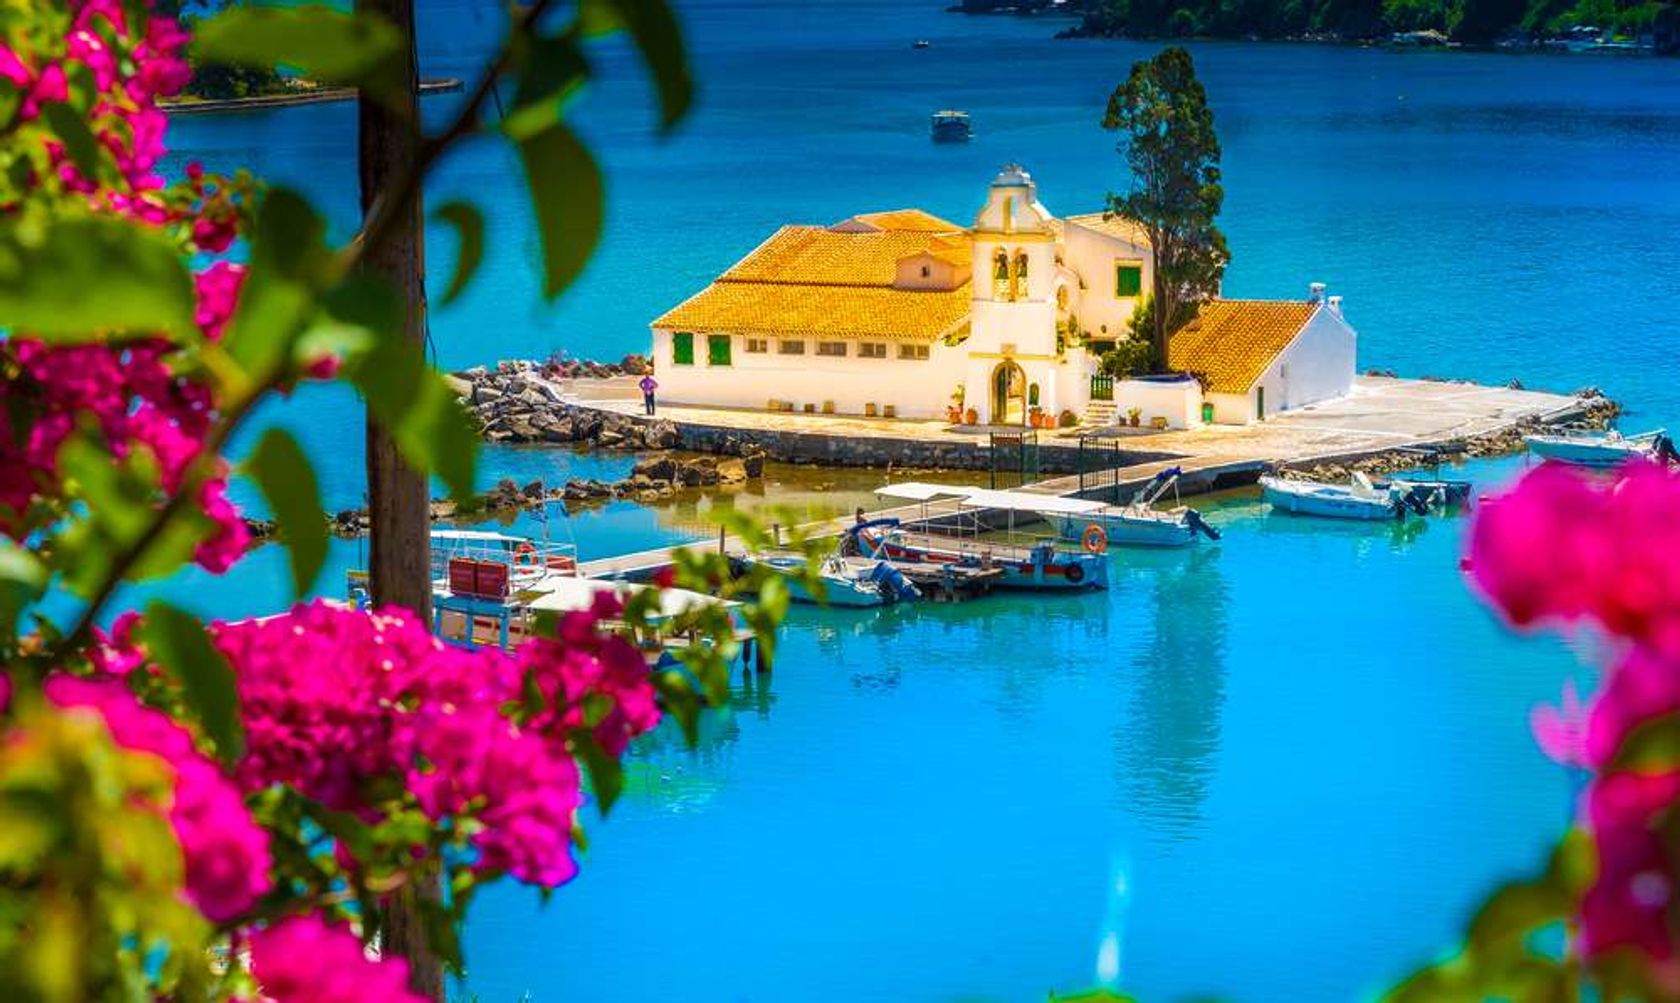 Griekenland Corfu huis met rondom water